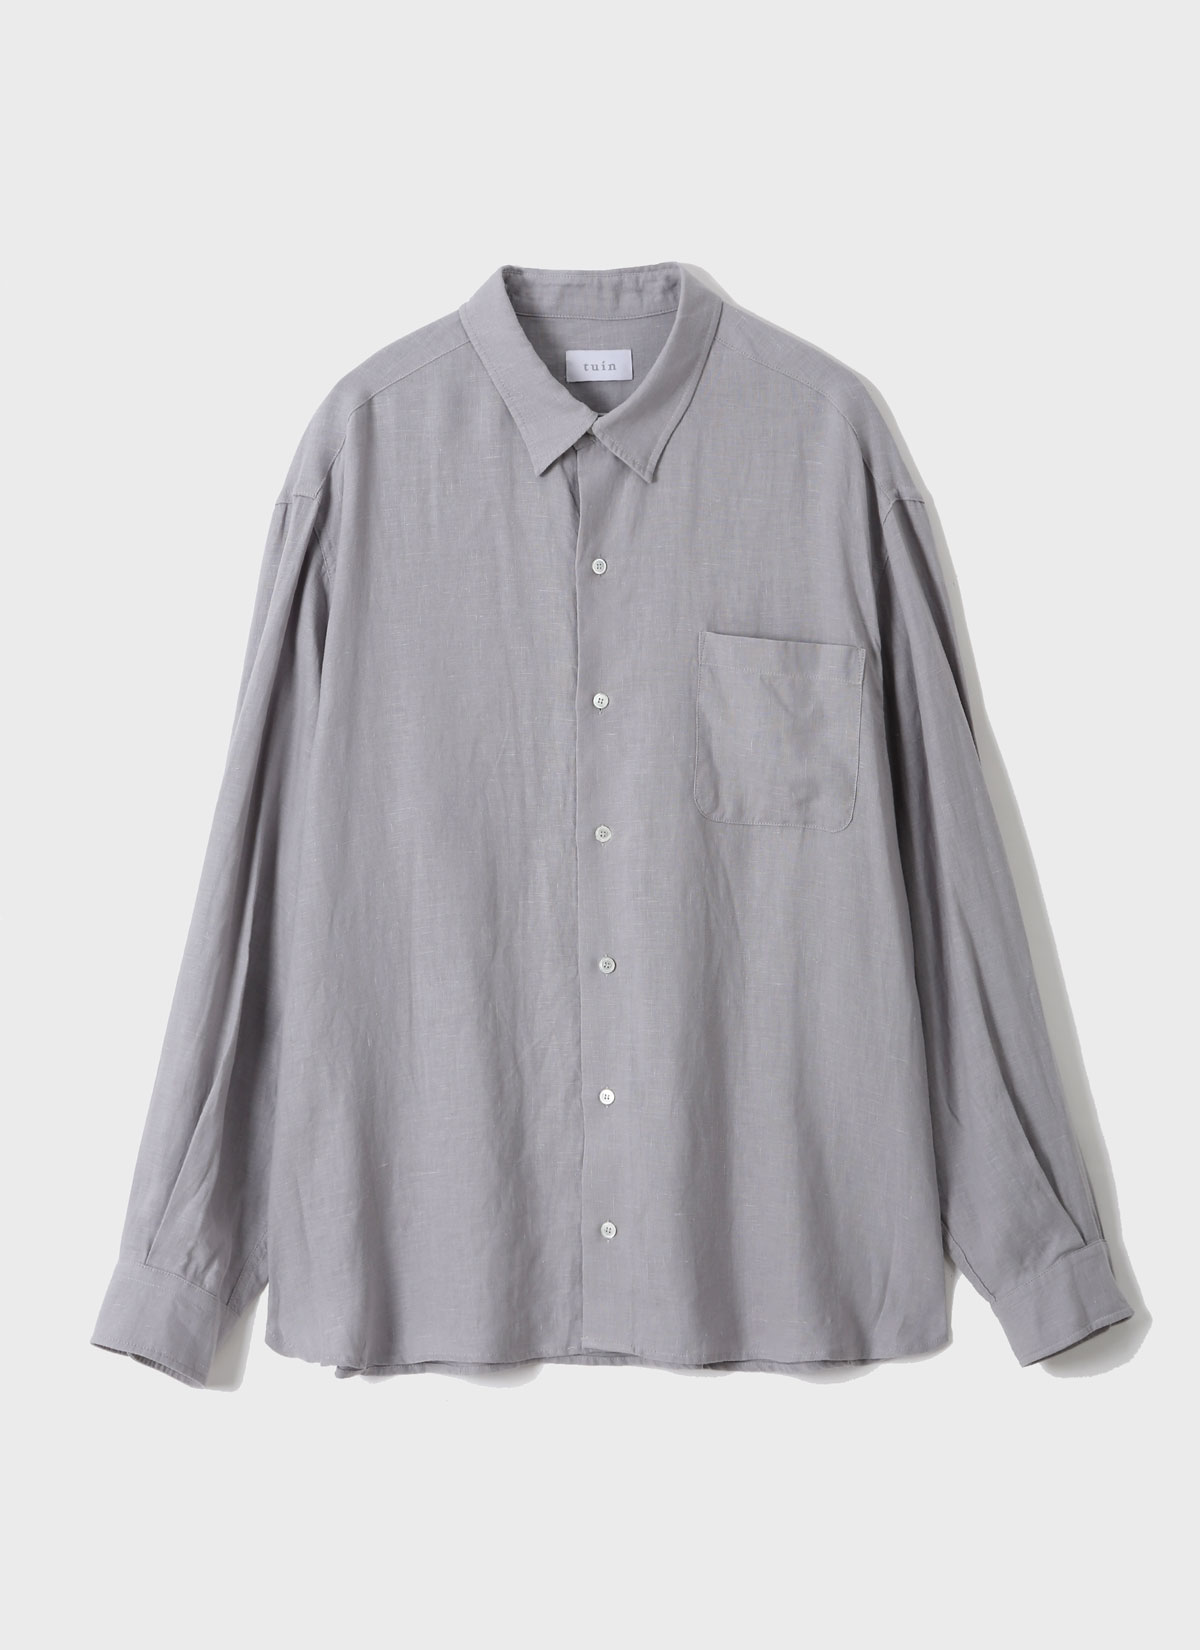 Cloud Shirt Light Gray (Linen)